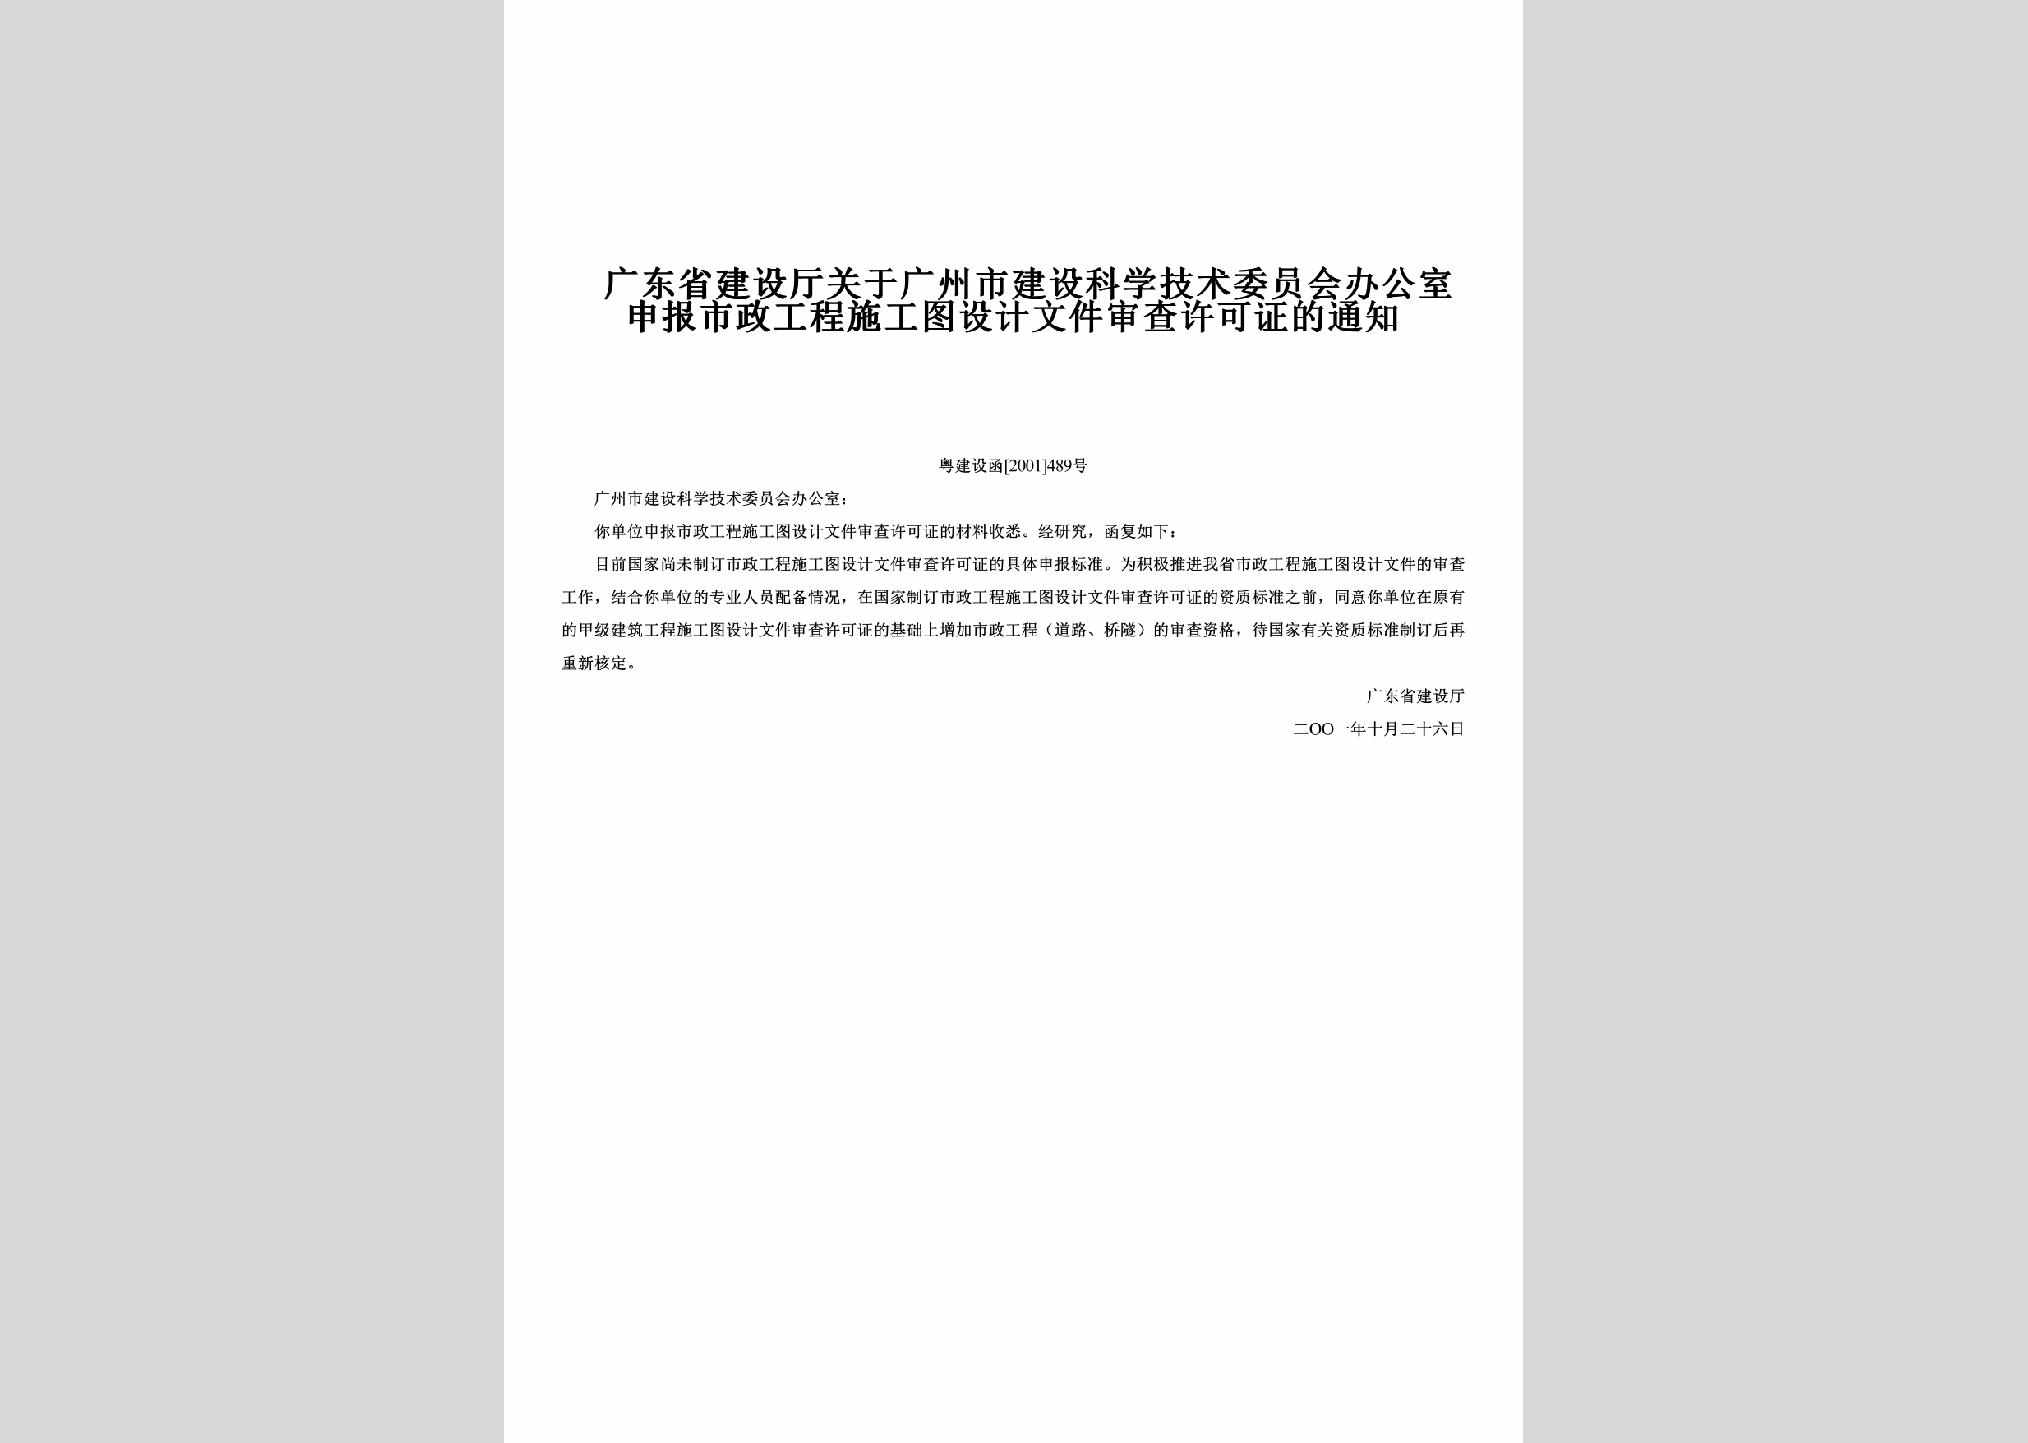 粤建设函[2001]489号：关于广州市建设科学技术委员会办公室申报市政工程施工图设计文件审查许可证的通知